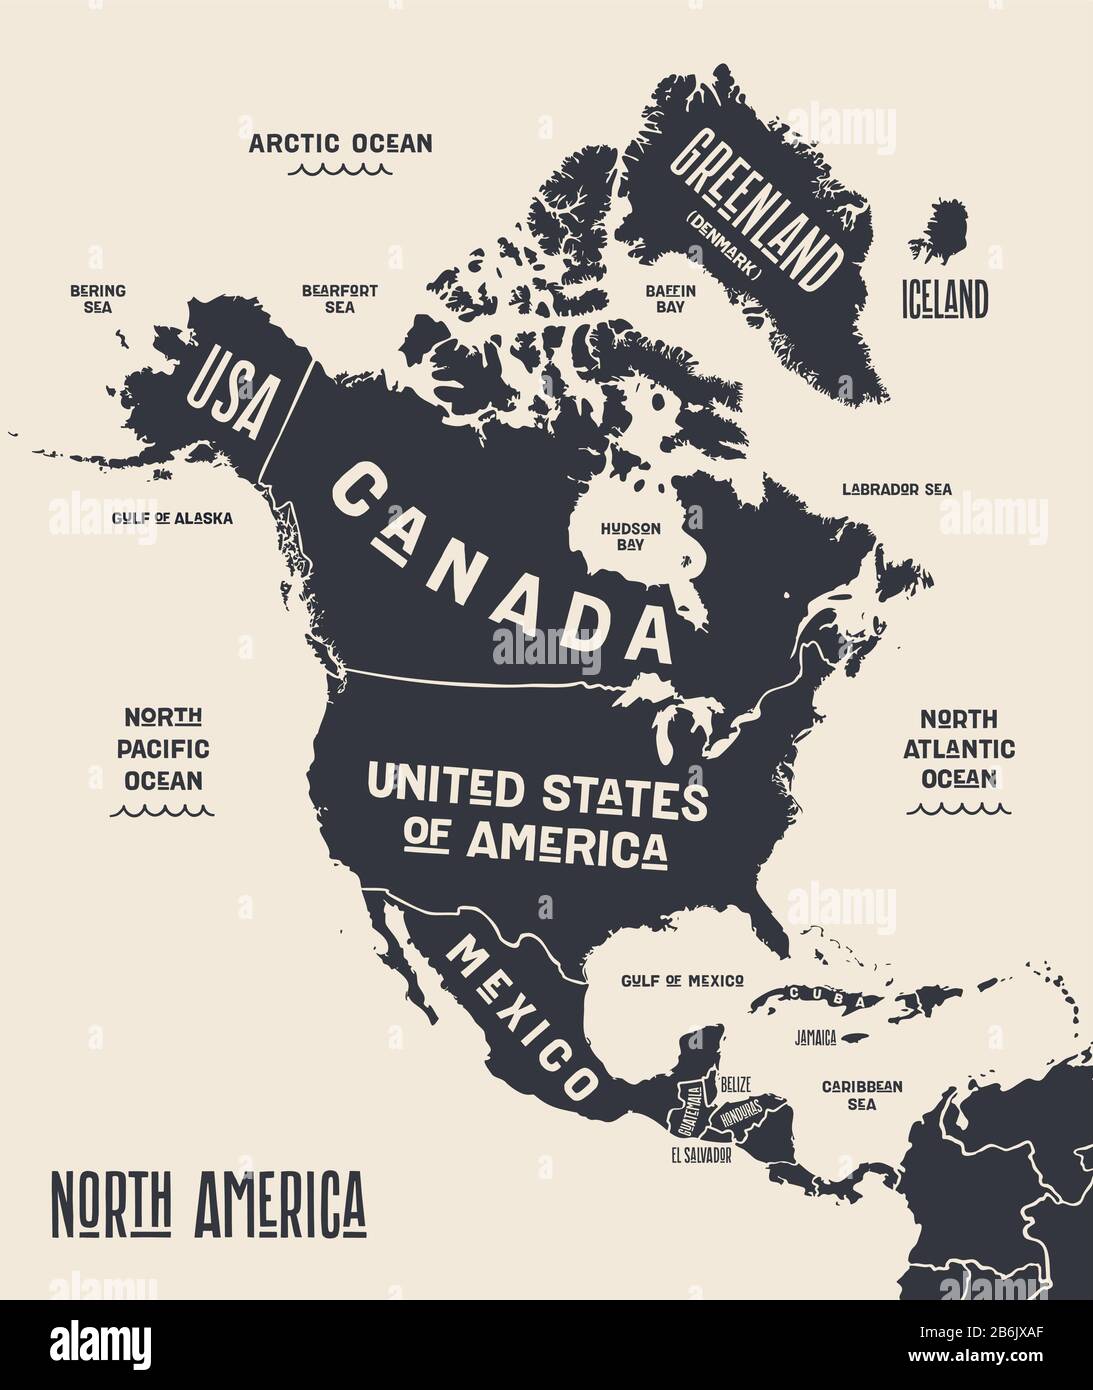 Mapa De América Del Norte Mapa Póster De Norteamérica Mapa Impreso En Blanco Y Negro De 2248